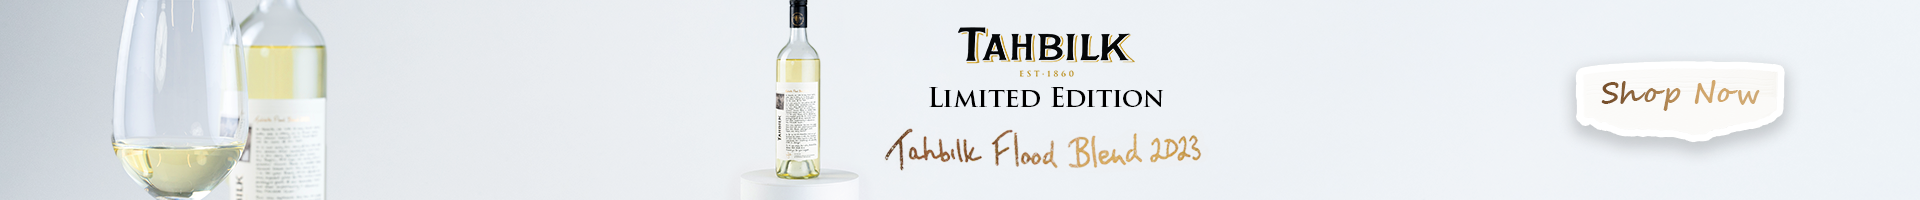 Tahbilk Flood Blend